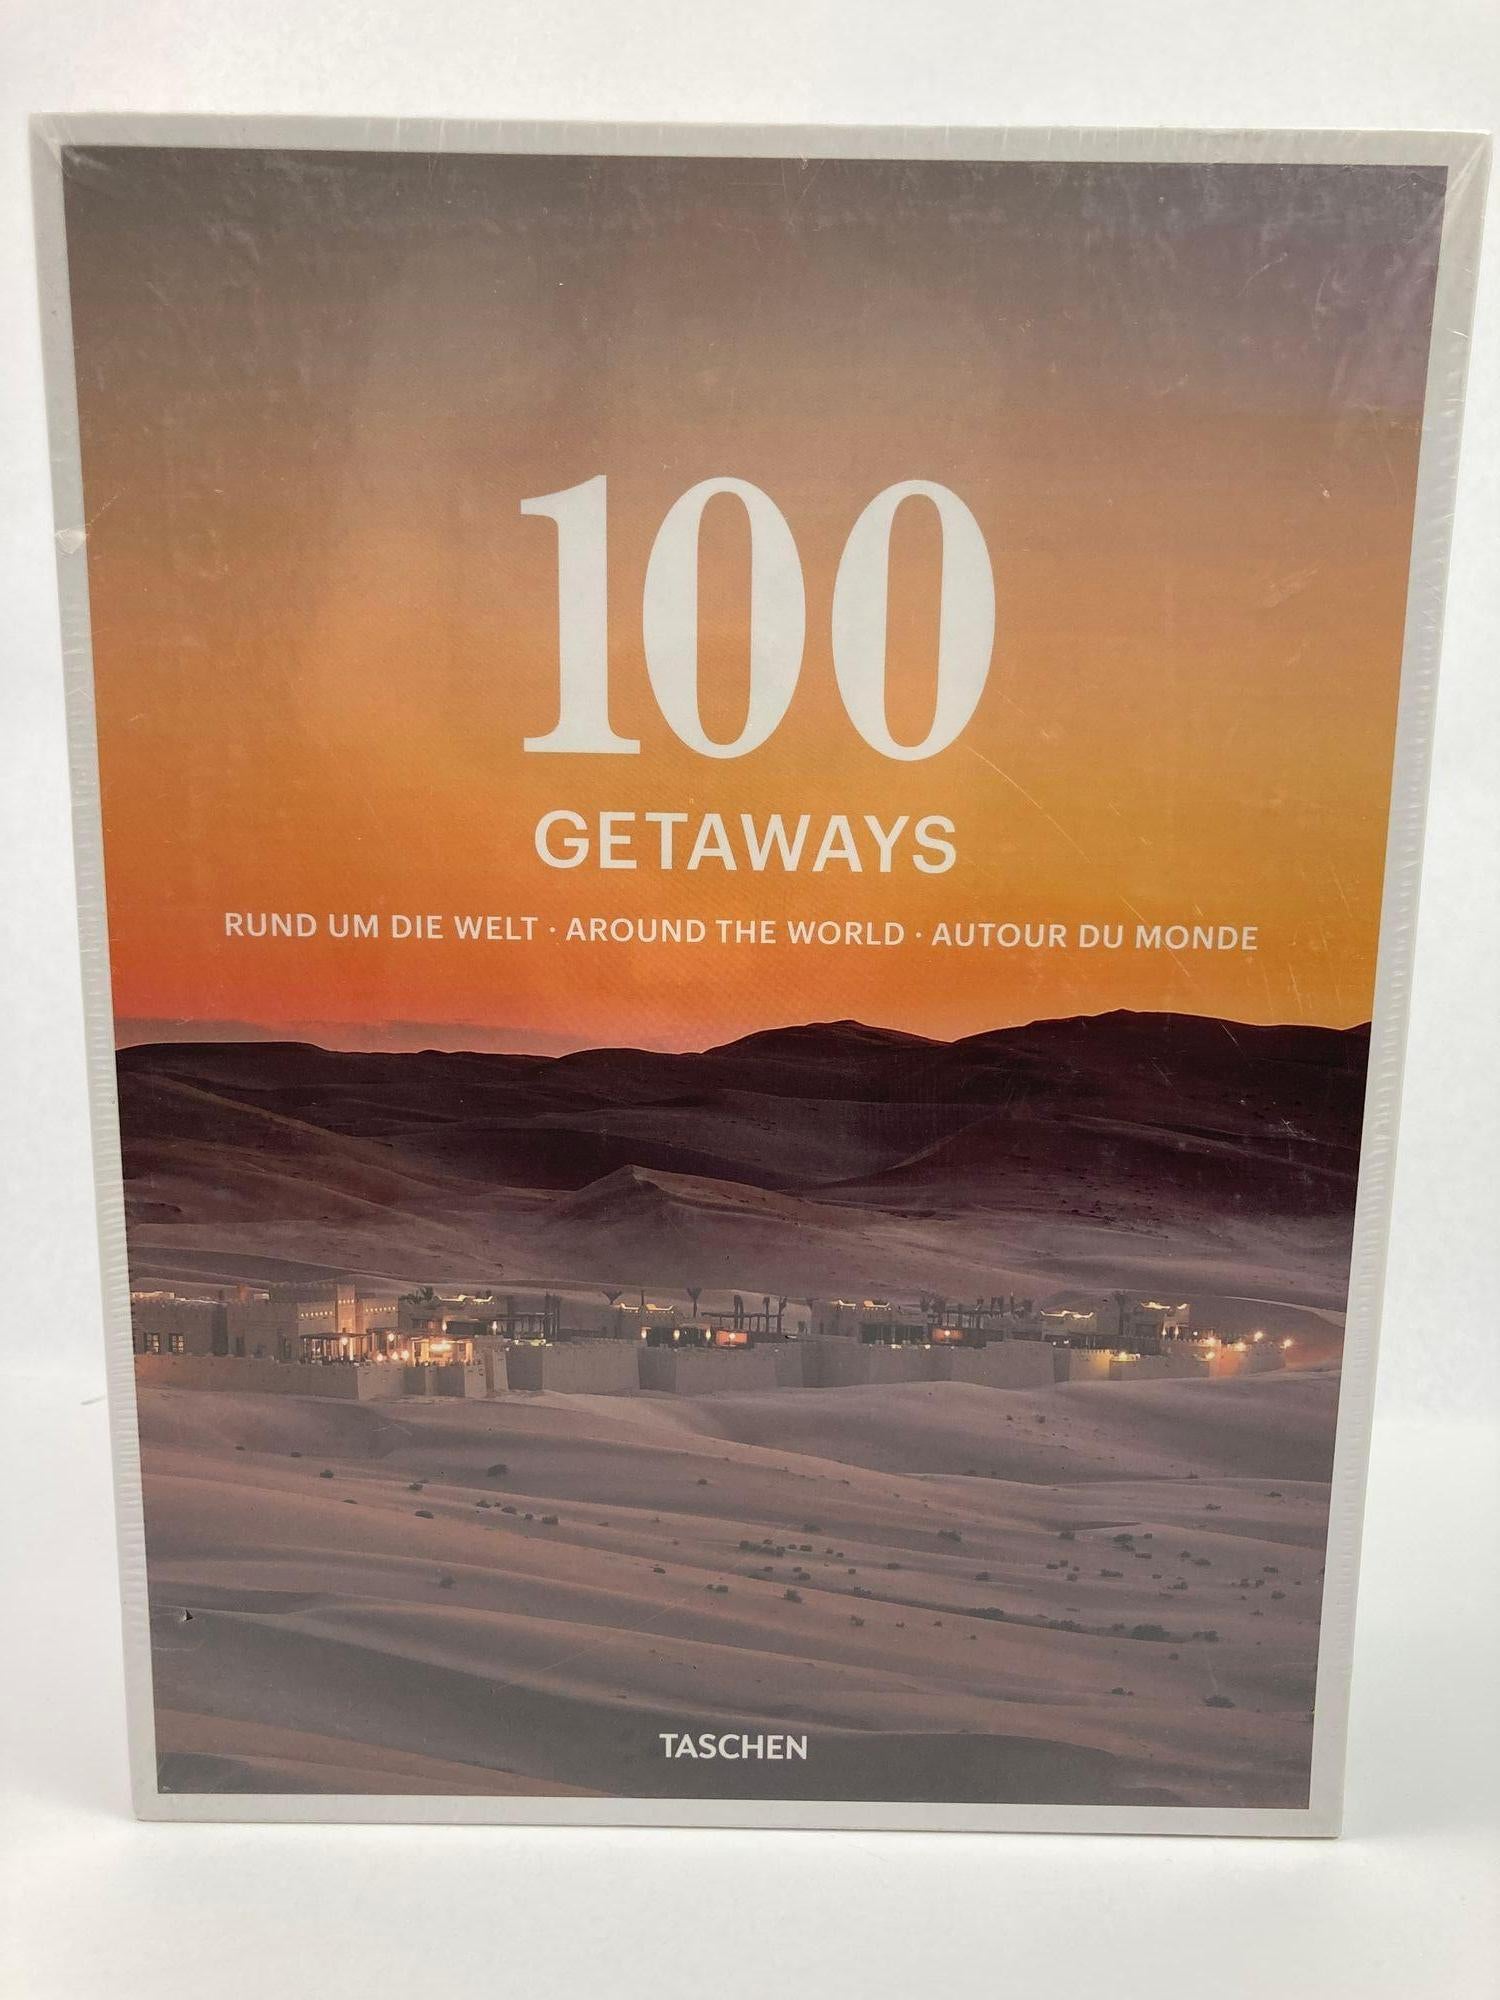 Paper 100 Getaways Around the World by Margit J. Mayer TASCHEN Hardcover 2014 For Sale